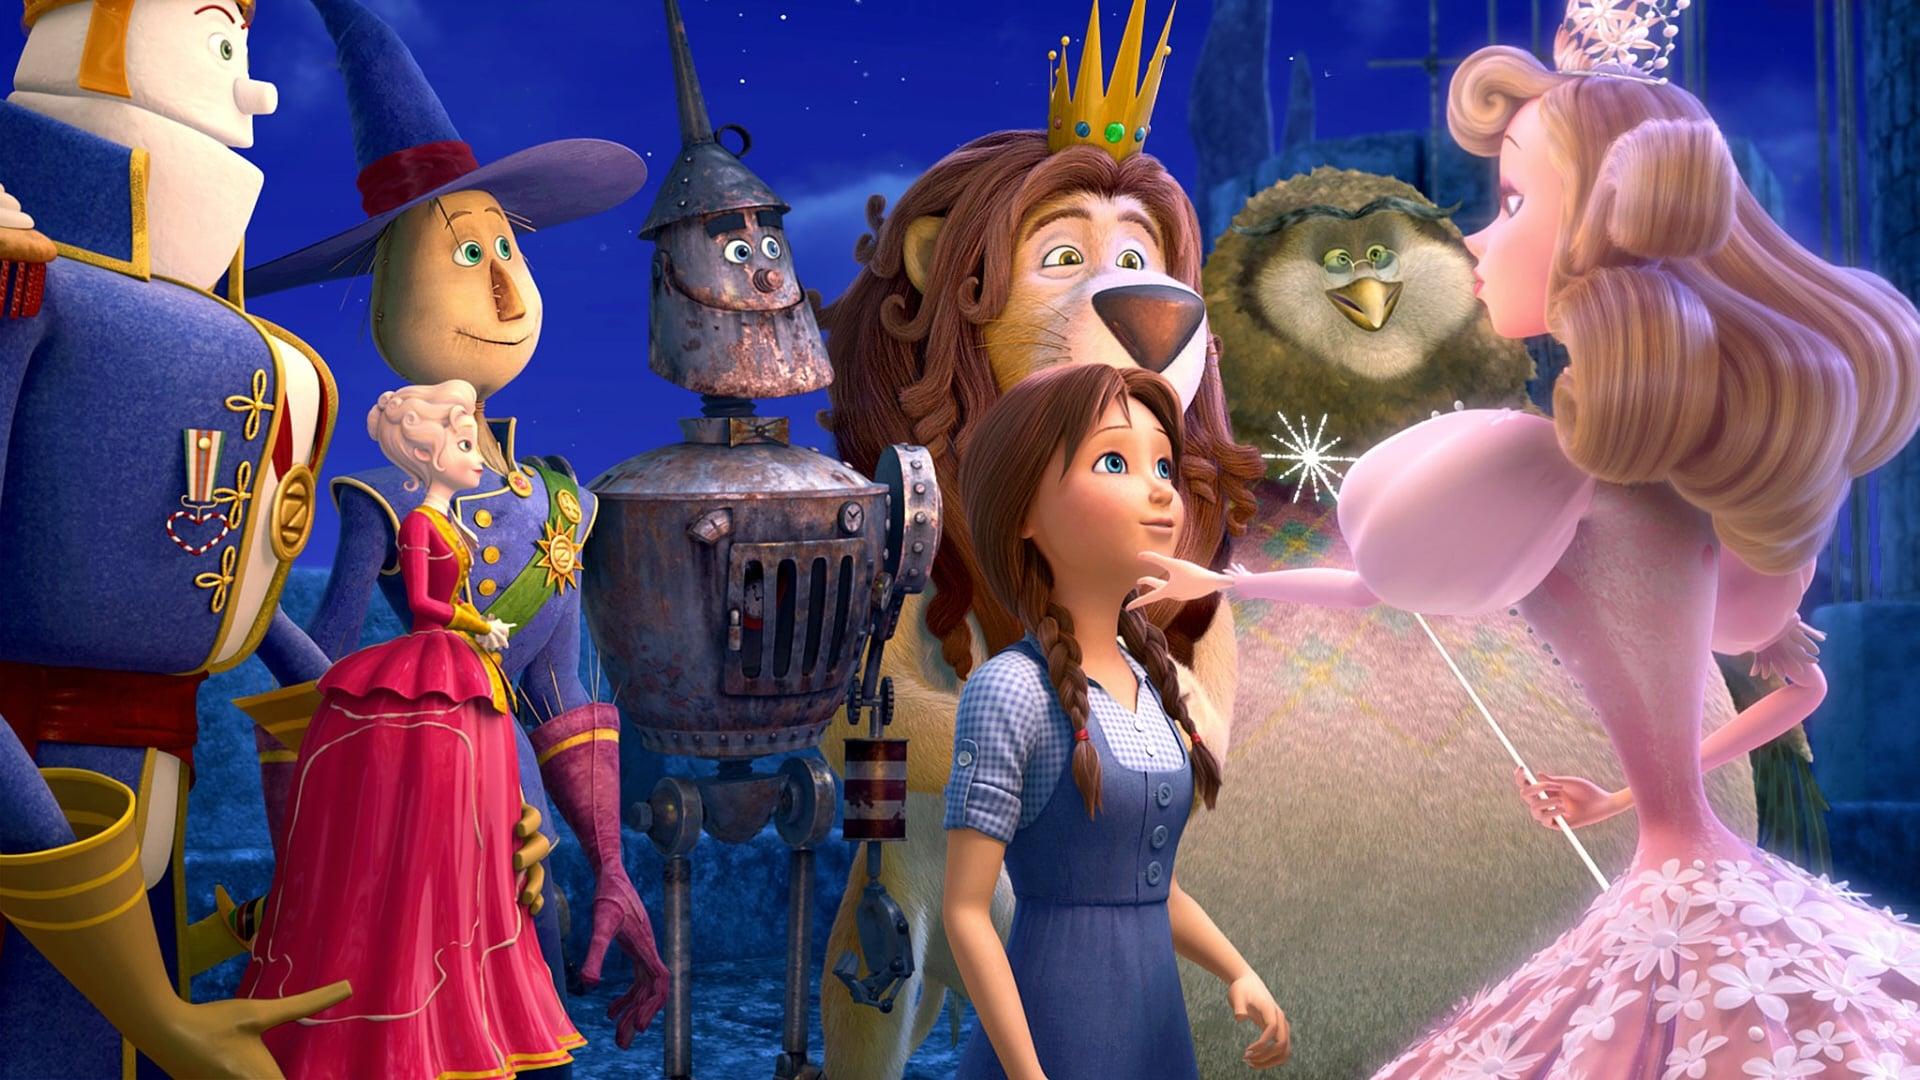 Legends of Oz: Dorothy's Return backdrop